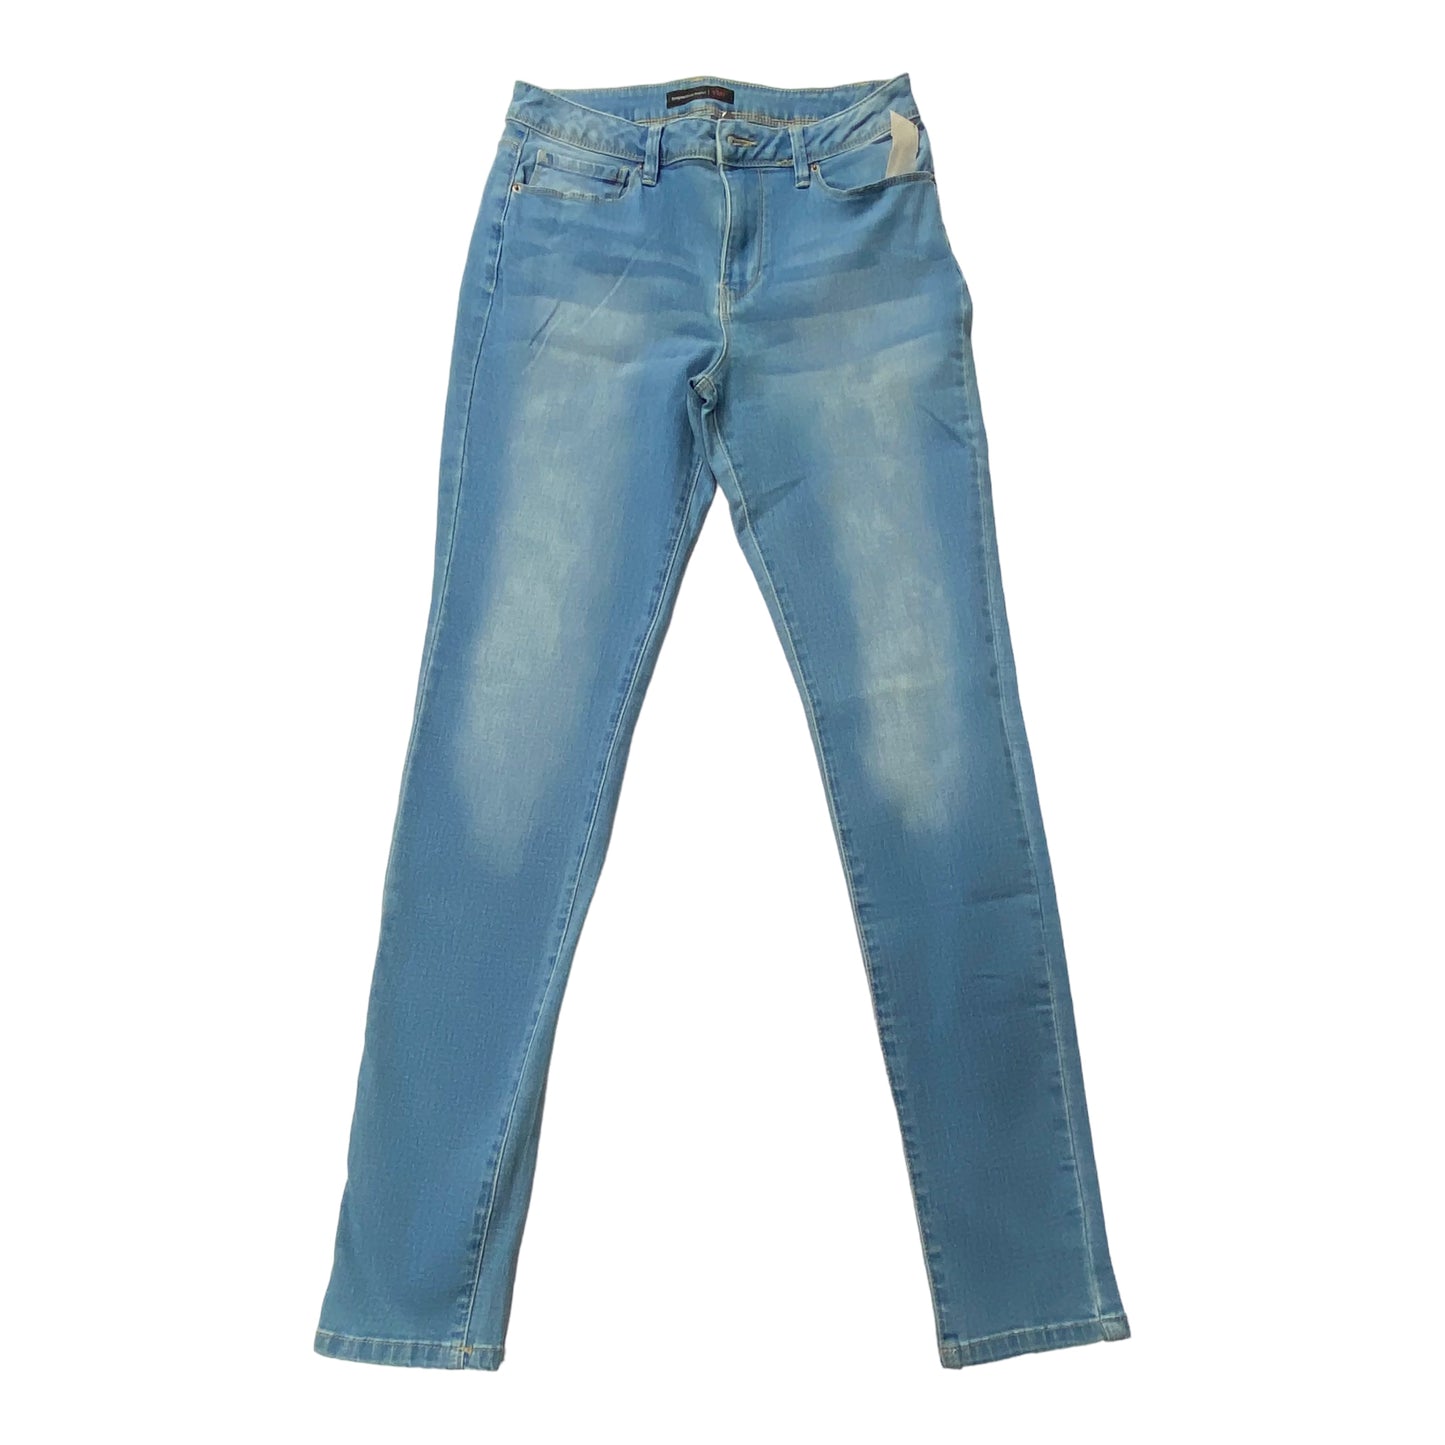 Blue Denim Jeans Skinny Ymi, Size 8